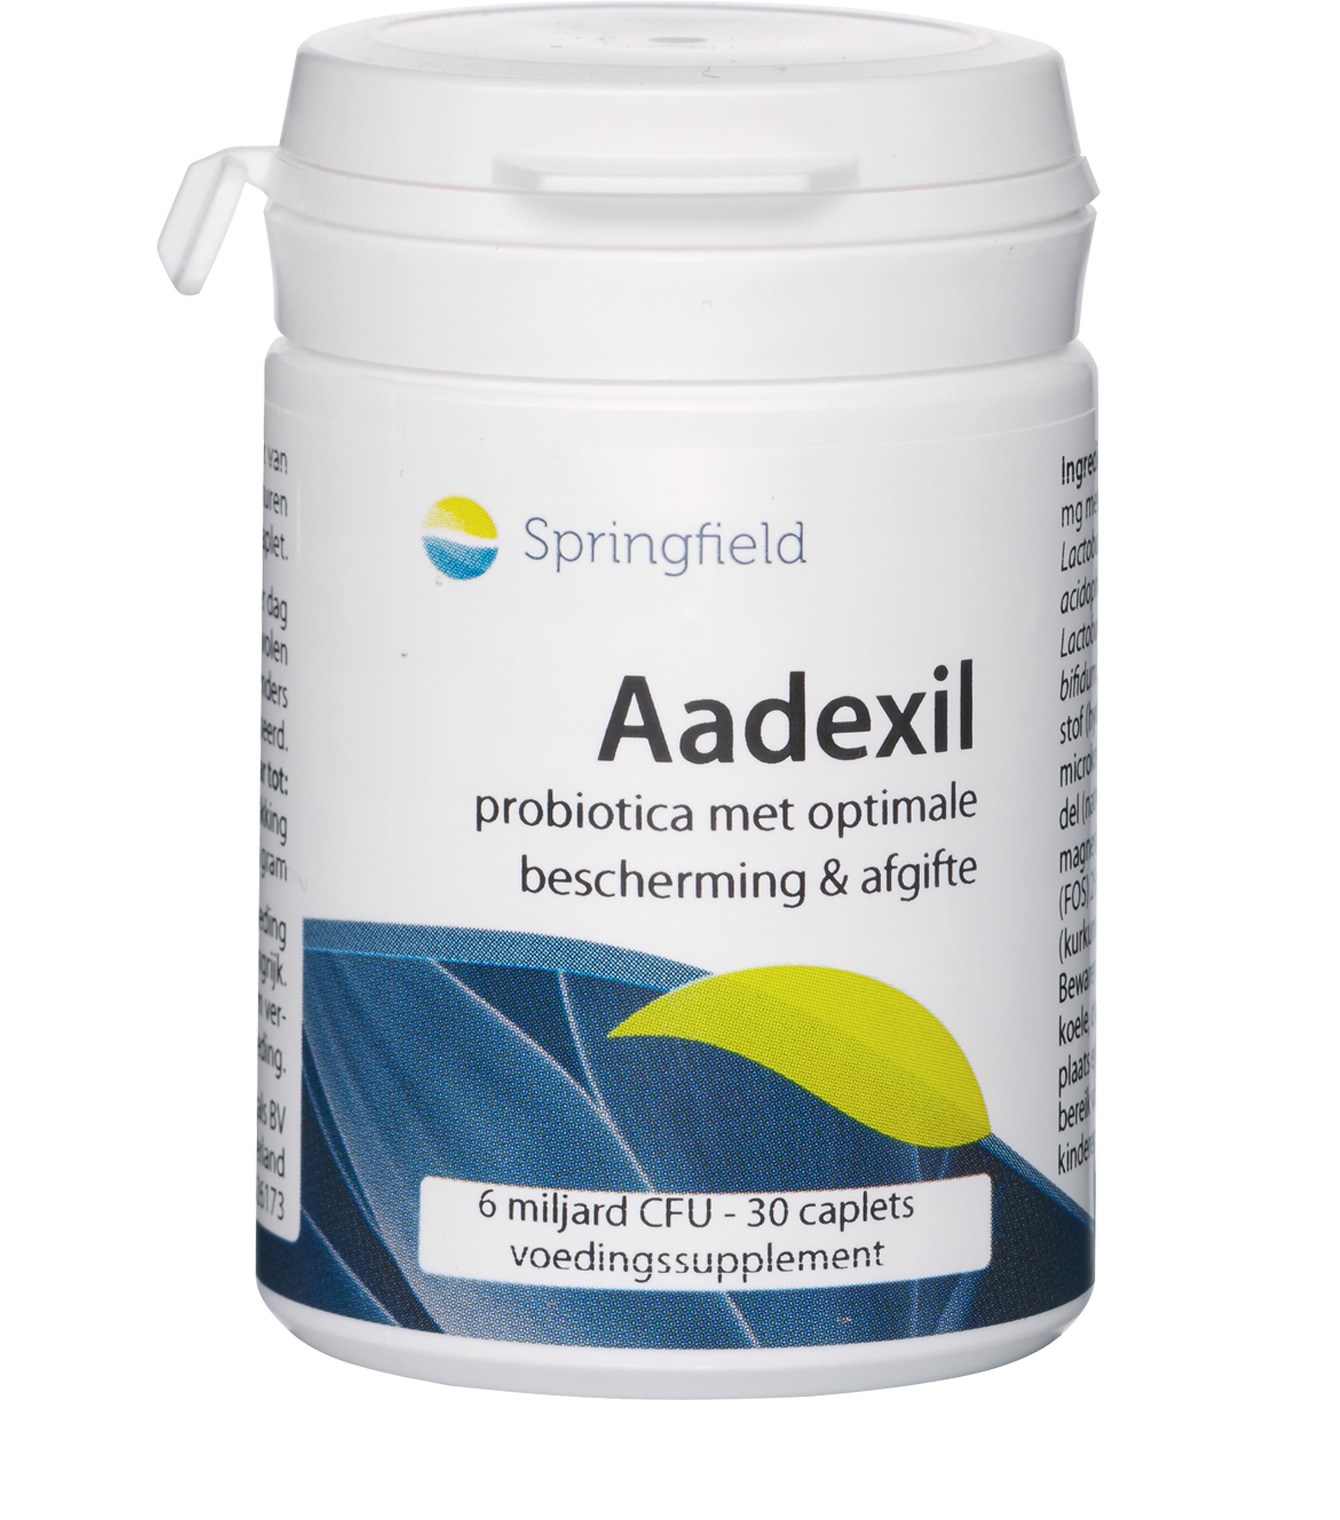 Aadexil - probiotica met optimale bescherming en afgifte - 30 caplets